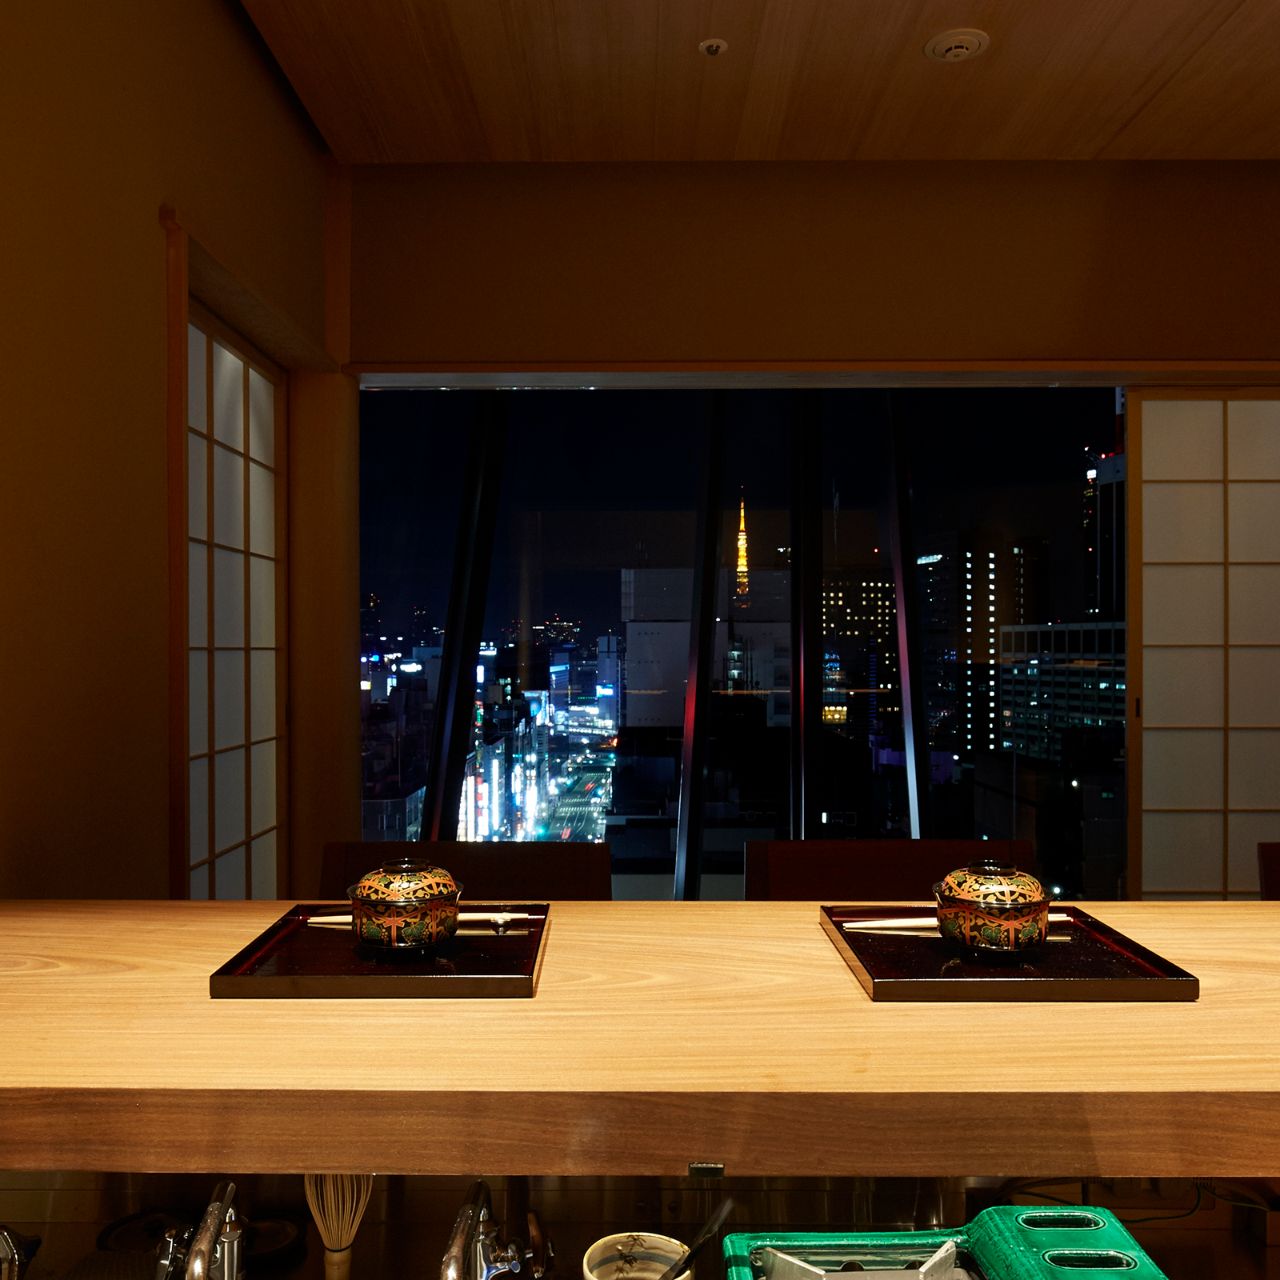 銀座 下鴨茶寮 東のはなれ レストラン - Tokyo（13）| OpenTable